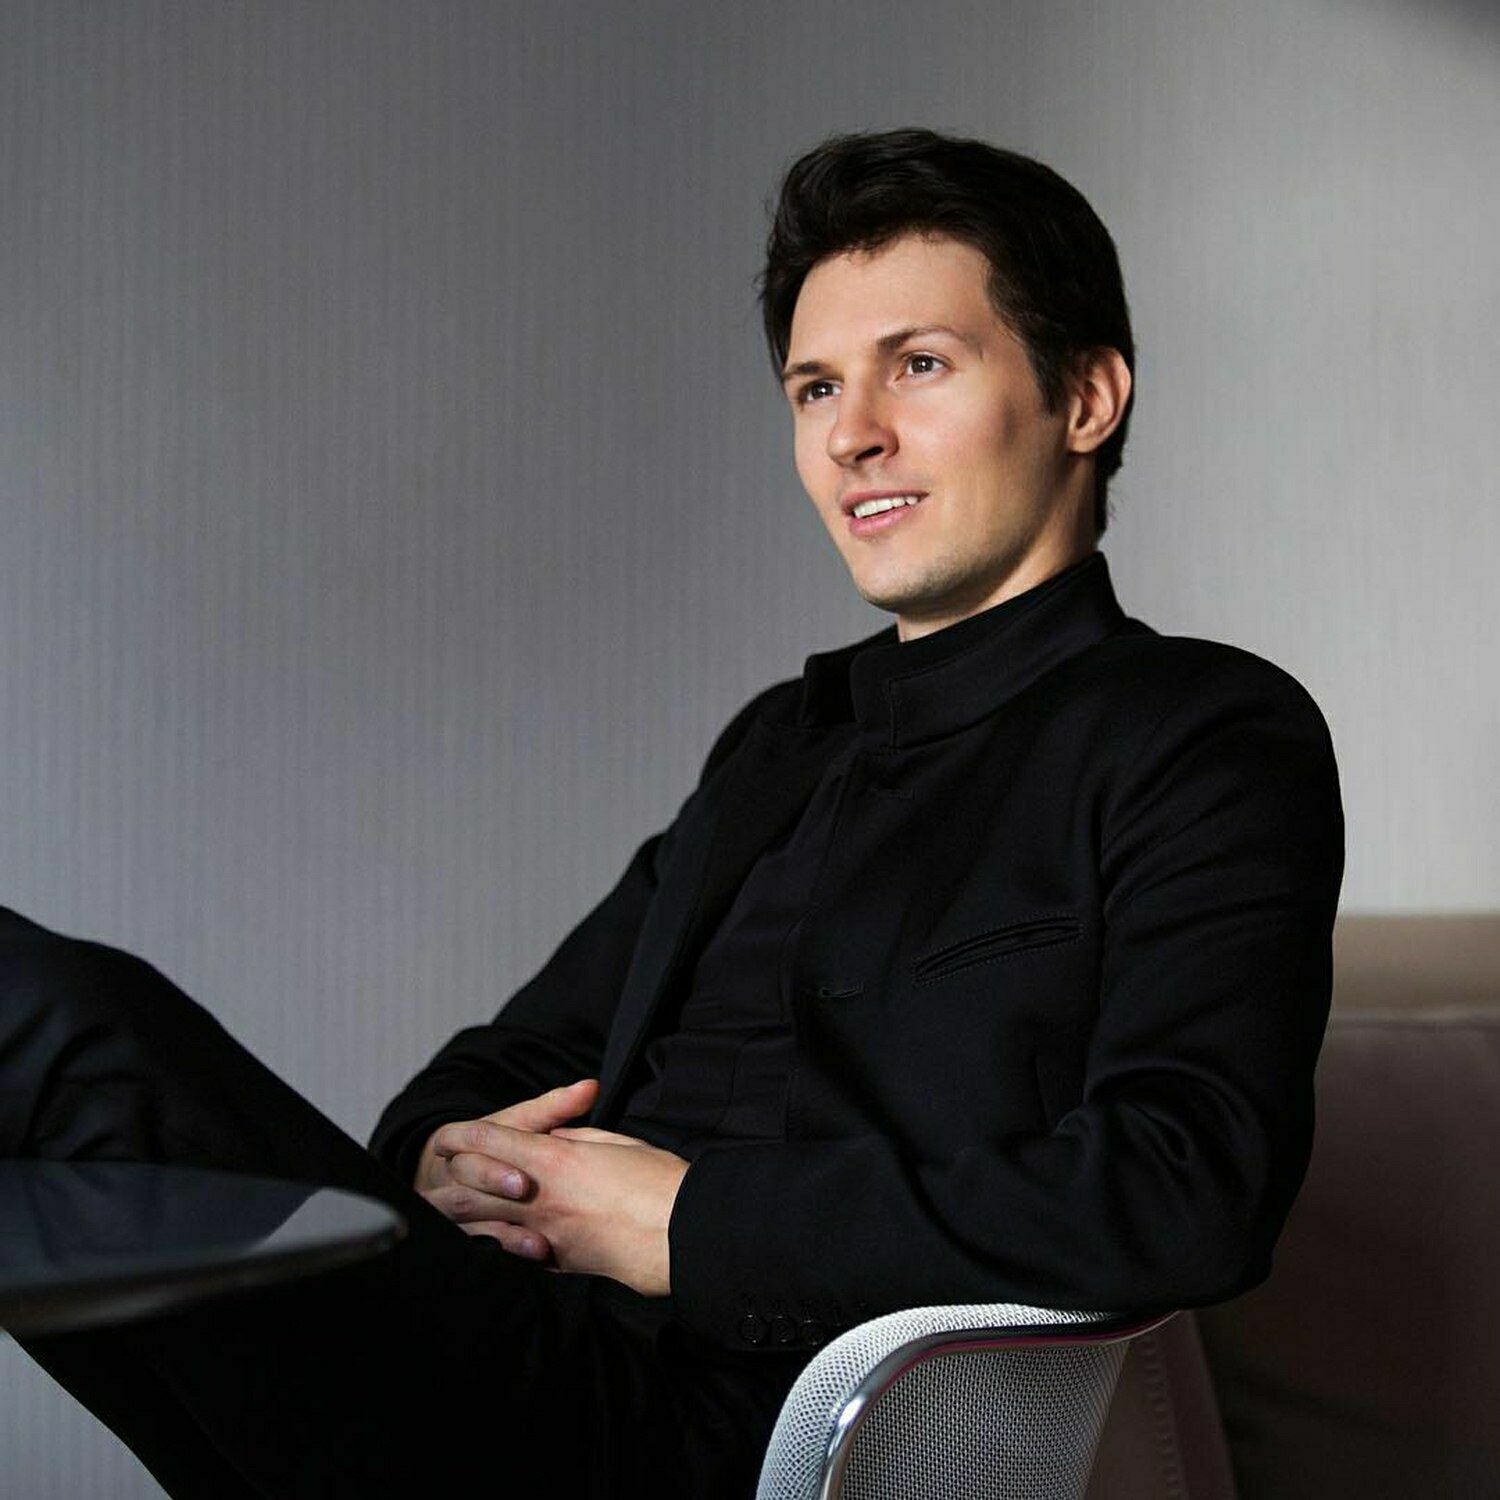 Павел Дуров заявил, что не транжирит деньги и нам не советует